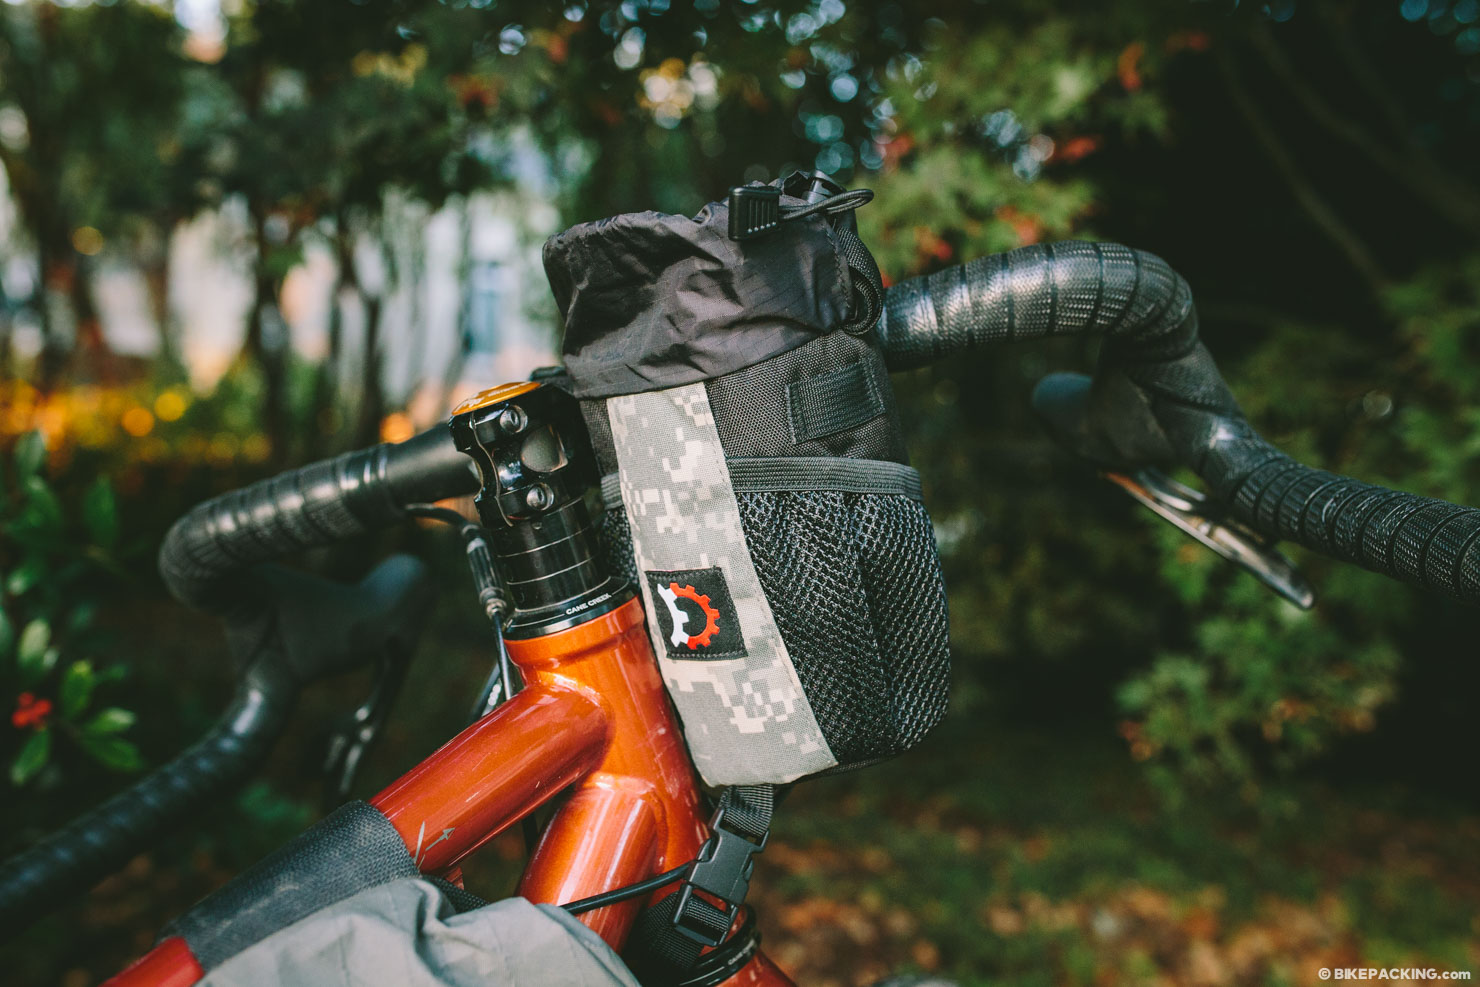 bikepacking feed bag